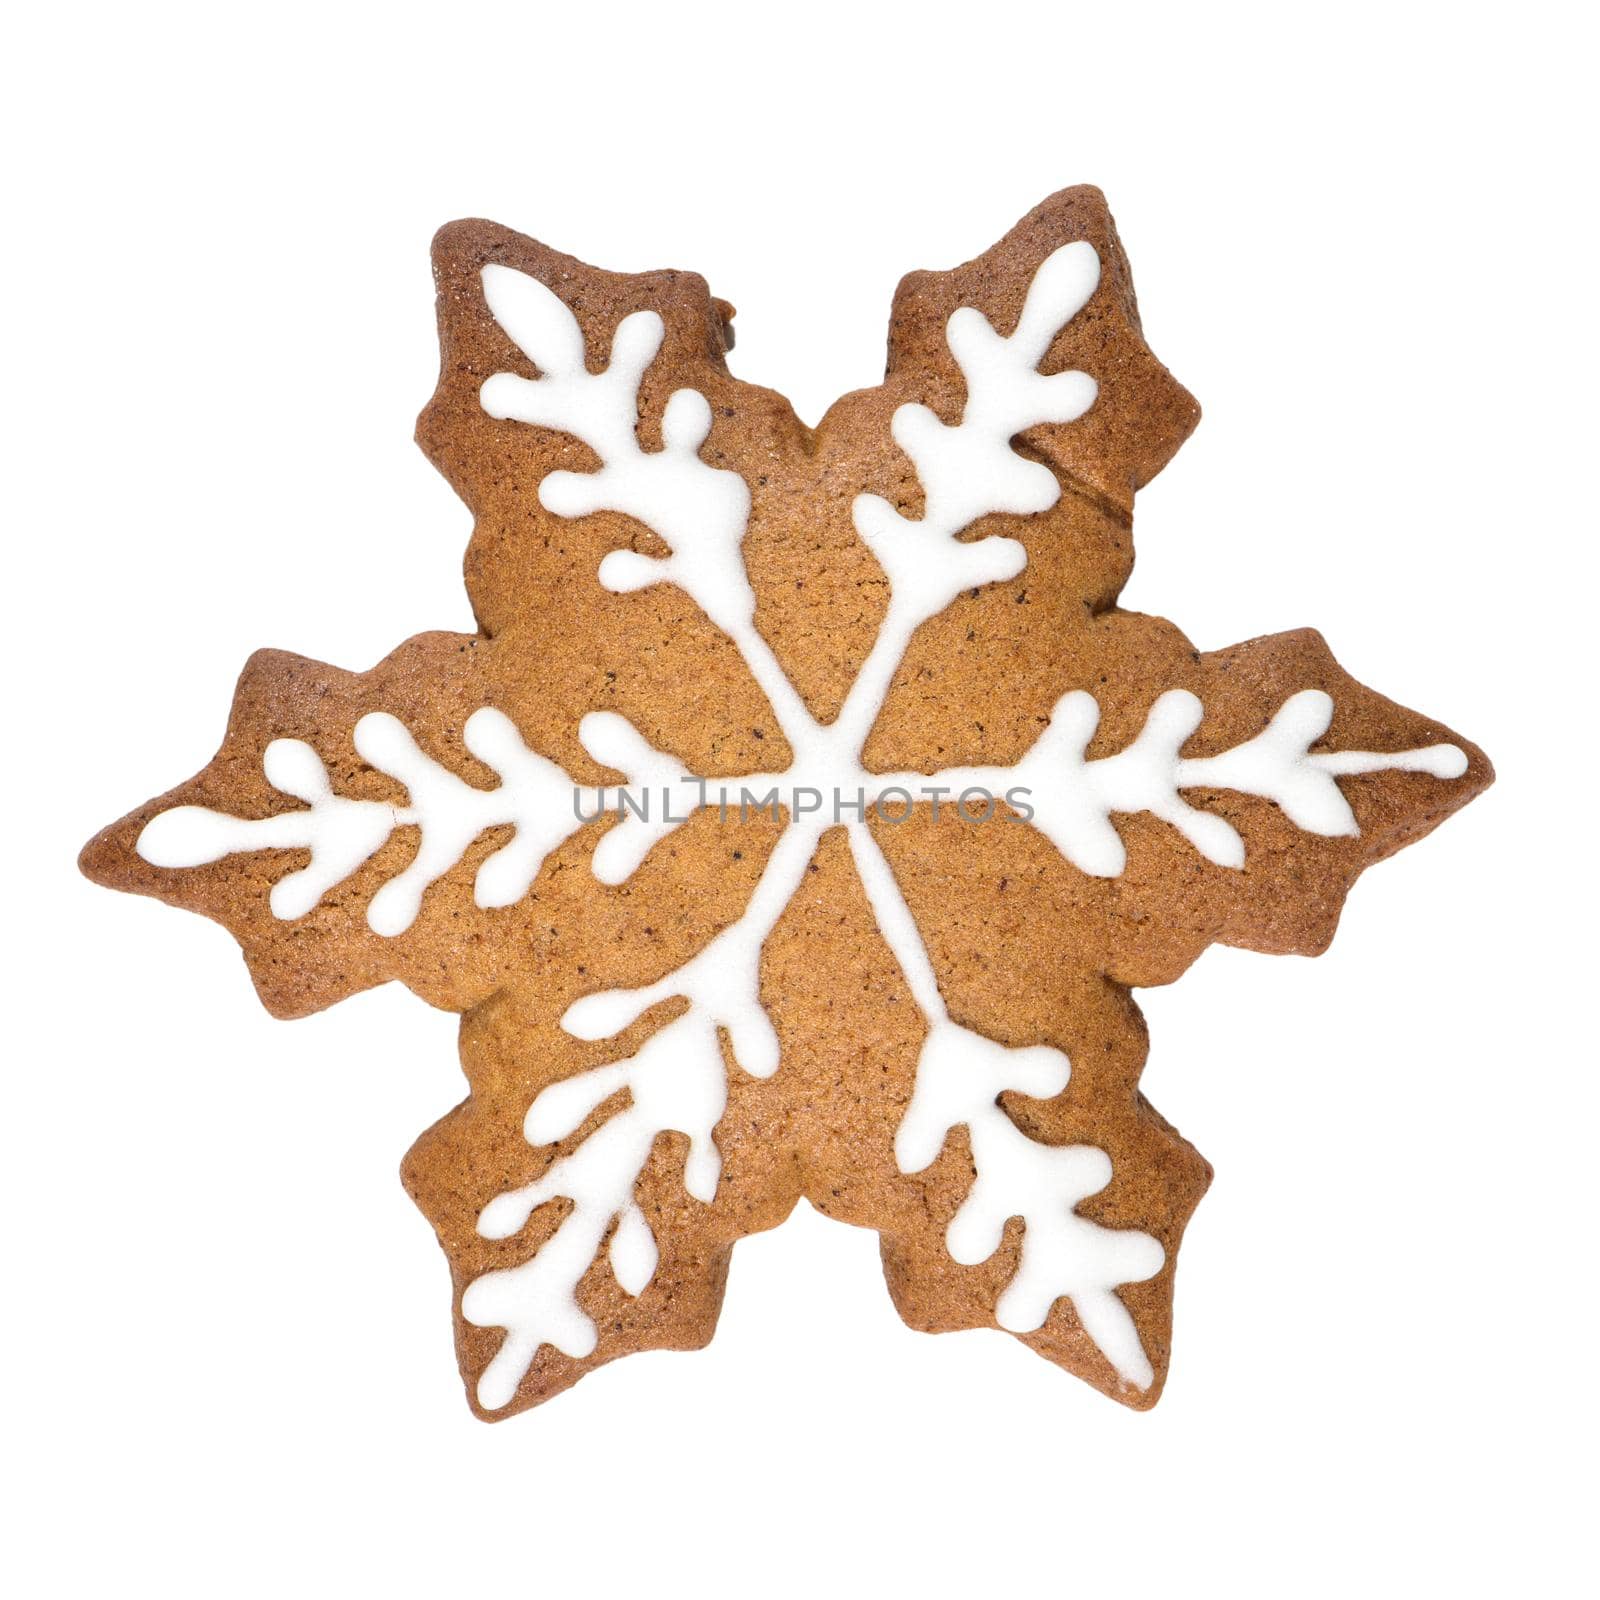 Gingerbread cookie in snowflake shape by homydesign